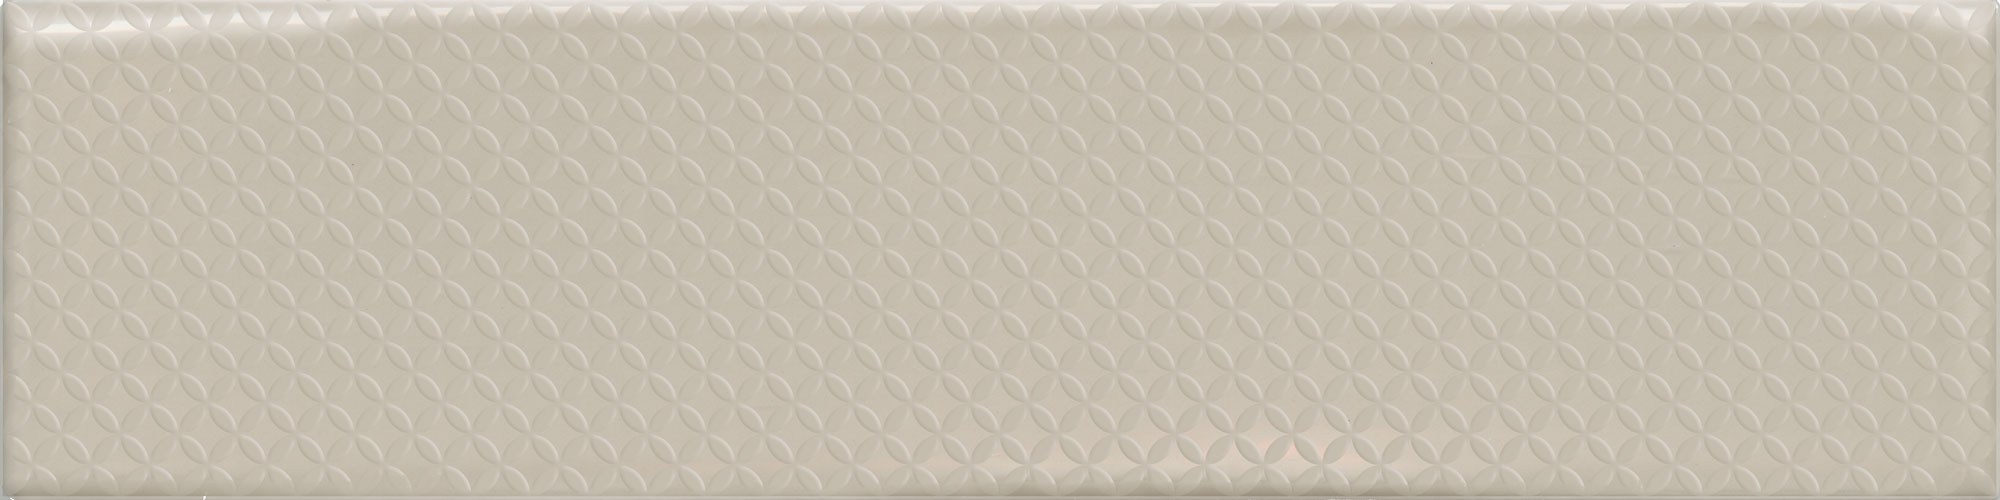 Керамическая плитка Декор FLORENCIA DECOR BEIGE 7,5x30 (0.5 кв.м..в уп, отгрузка кратно уп.) / коллекция FLORENCIA Decocer / производитель Decocer / страна Испания